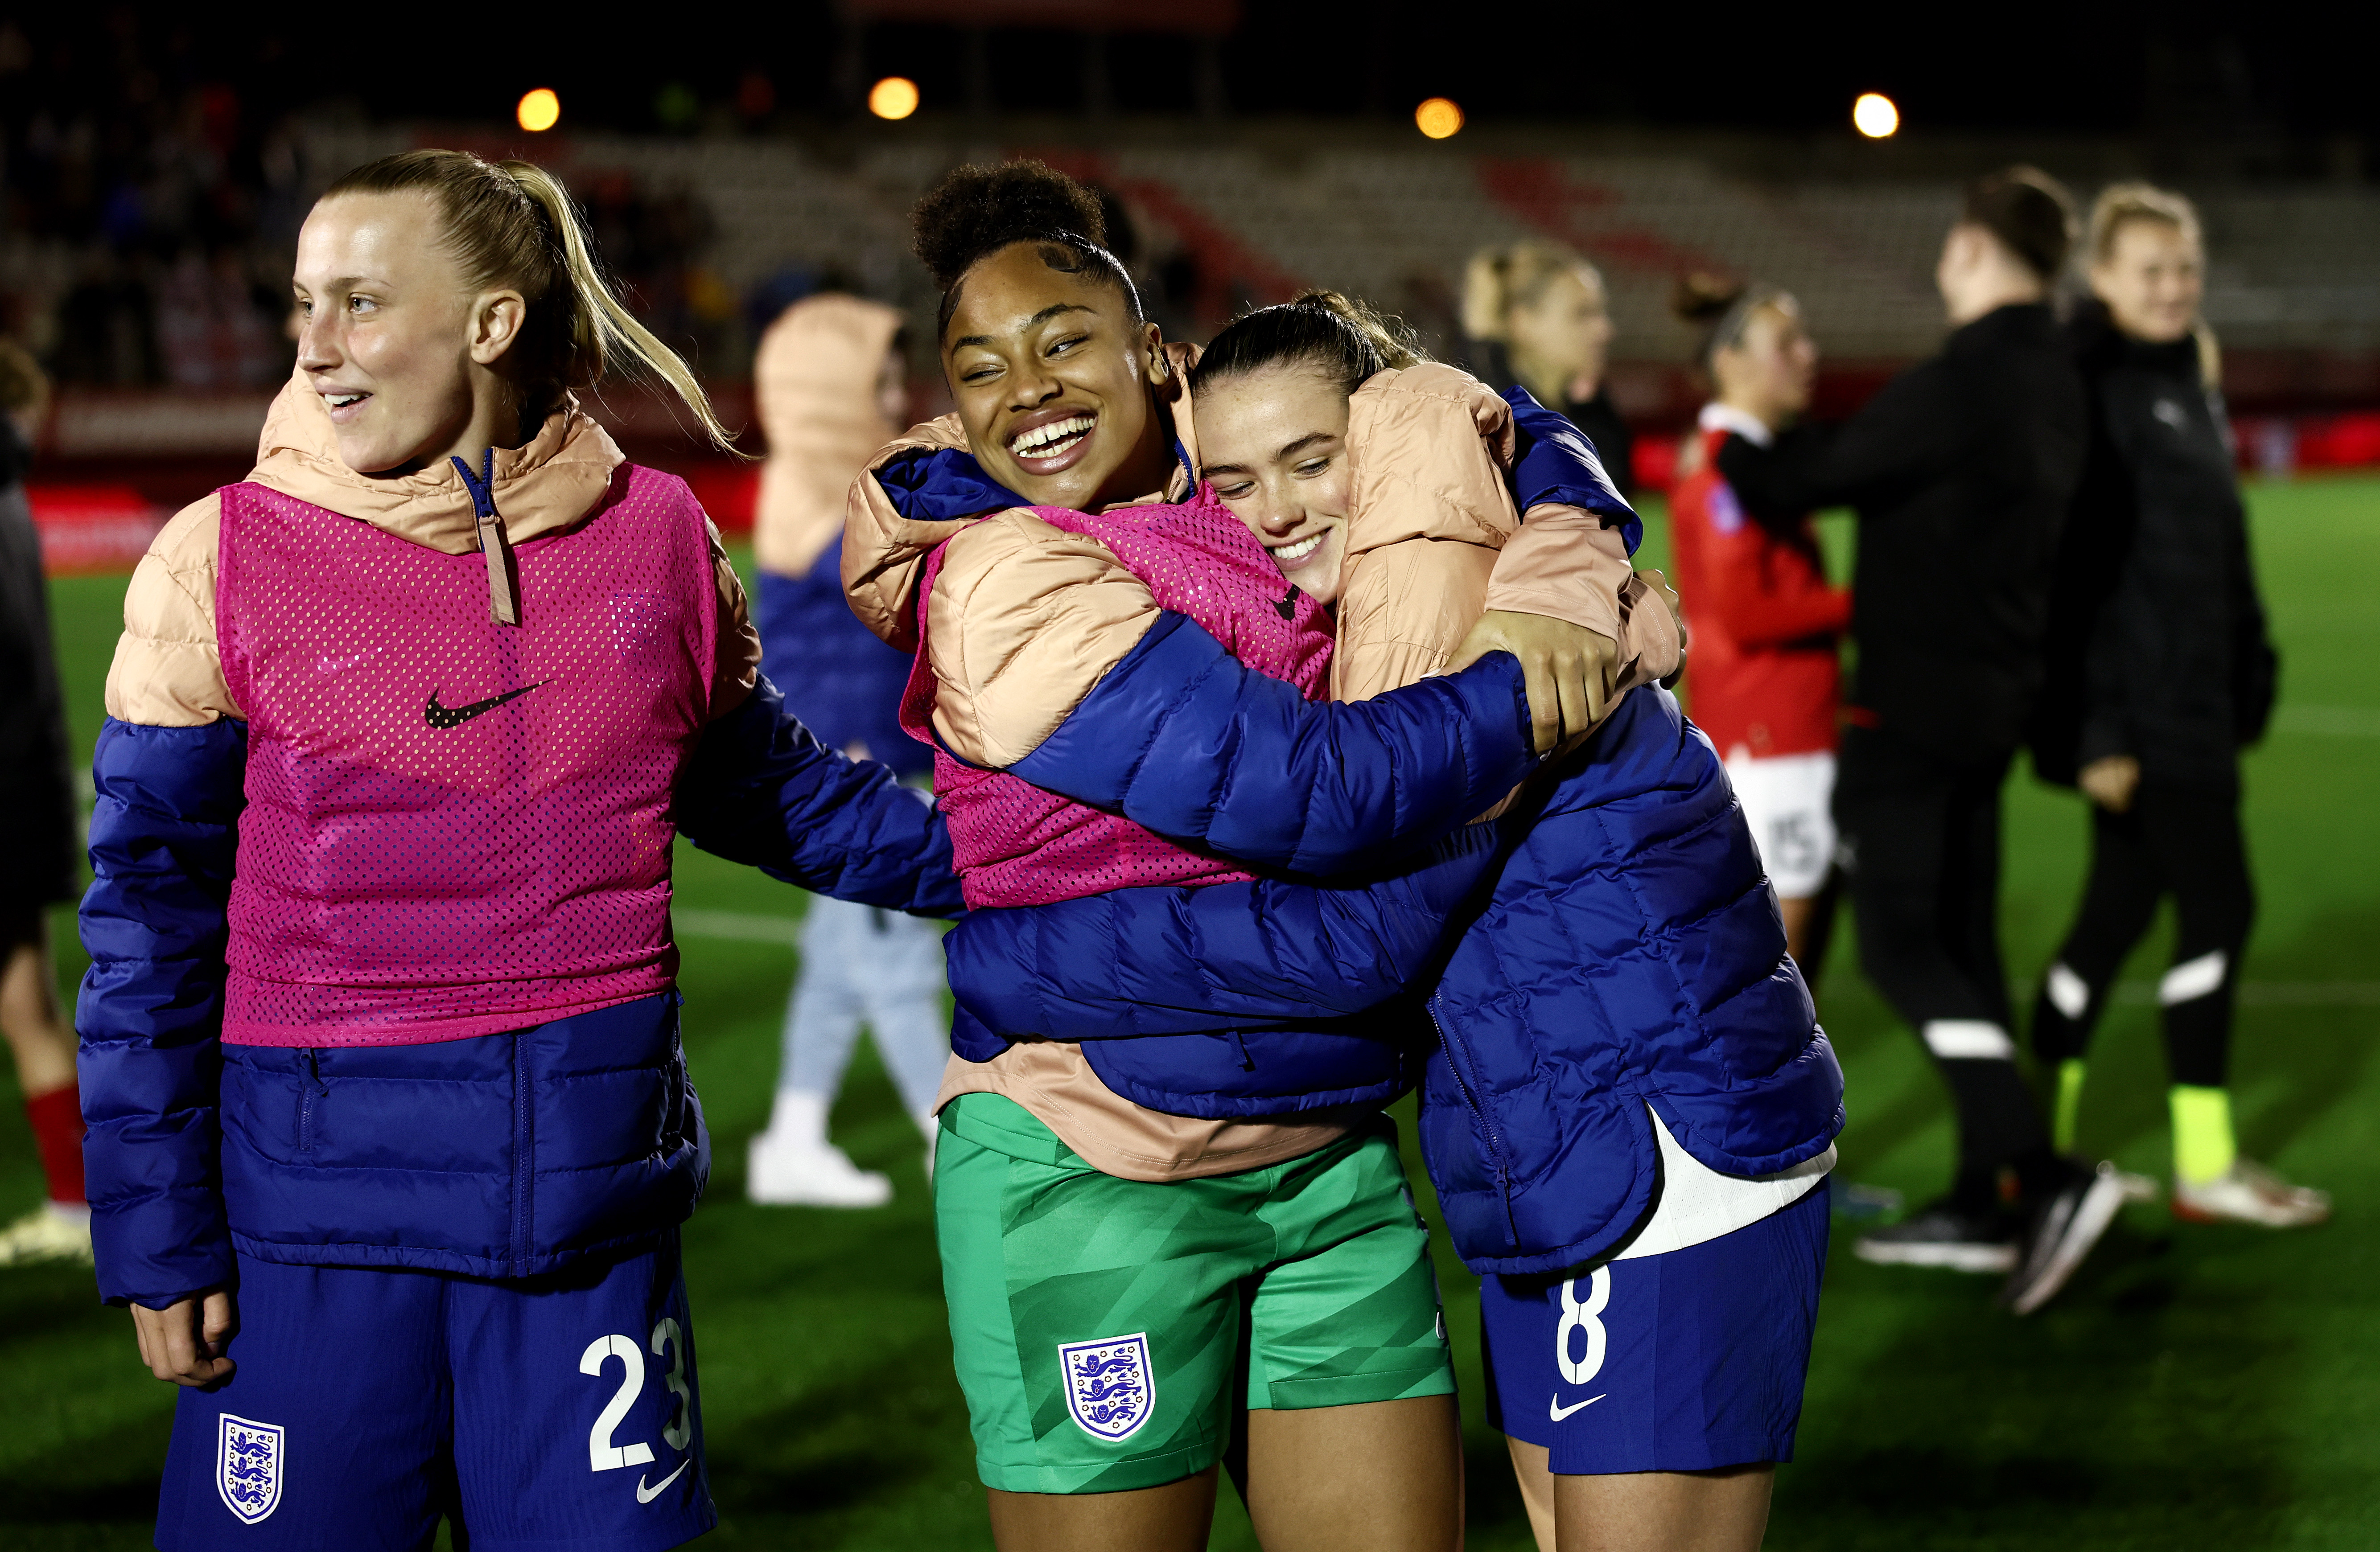 Aggie Beever-Jones und Khiara Keating waren für England ungenutzte Einwechselspieler, könnten aber gegen Italien einige Minuten im Einsatz sein